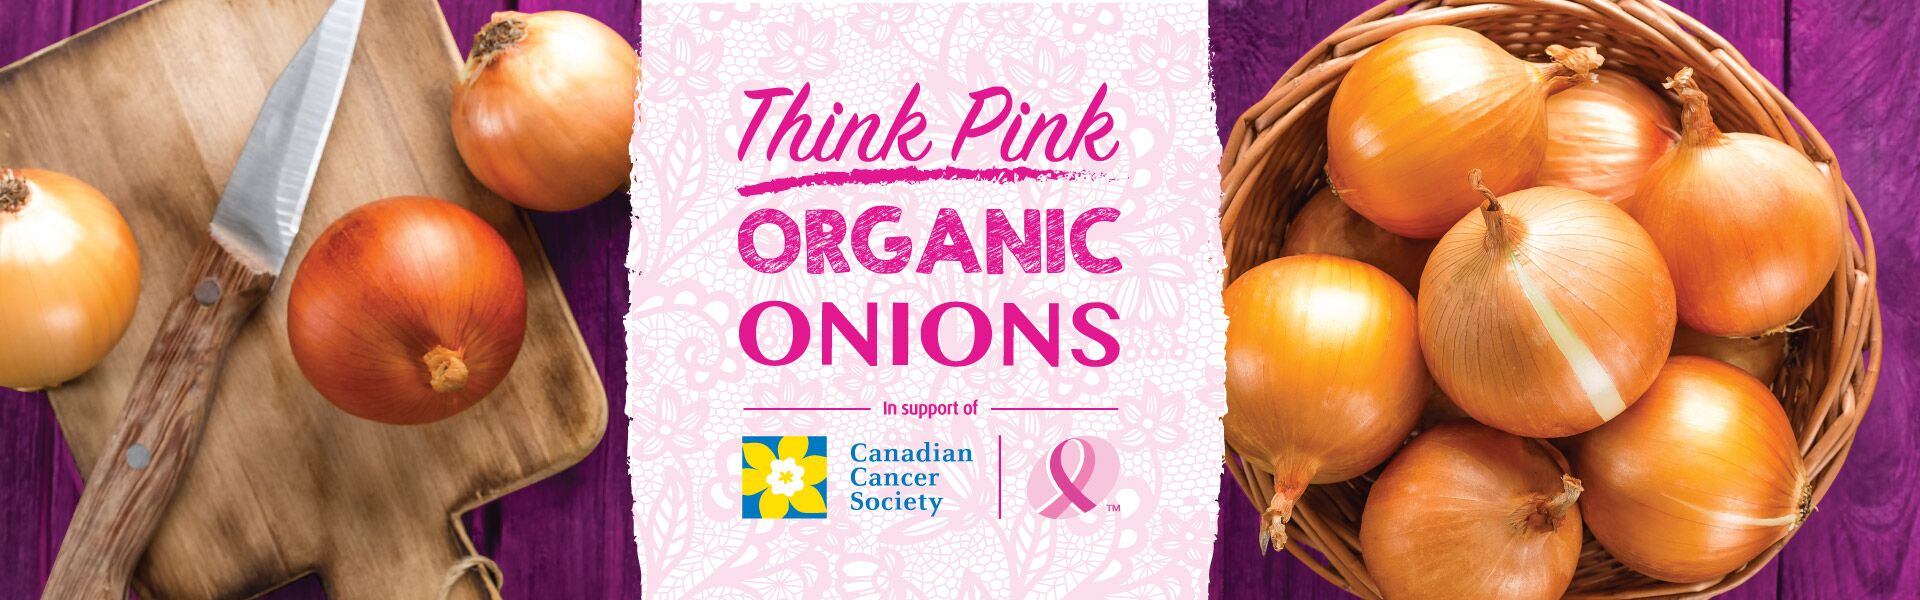 Thomas Fresh - Think Pink Organic Onions